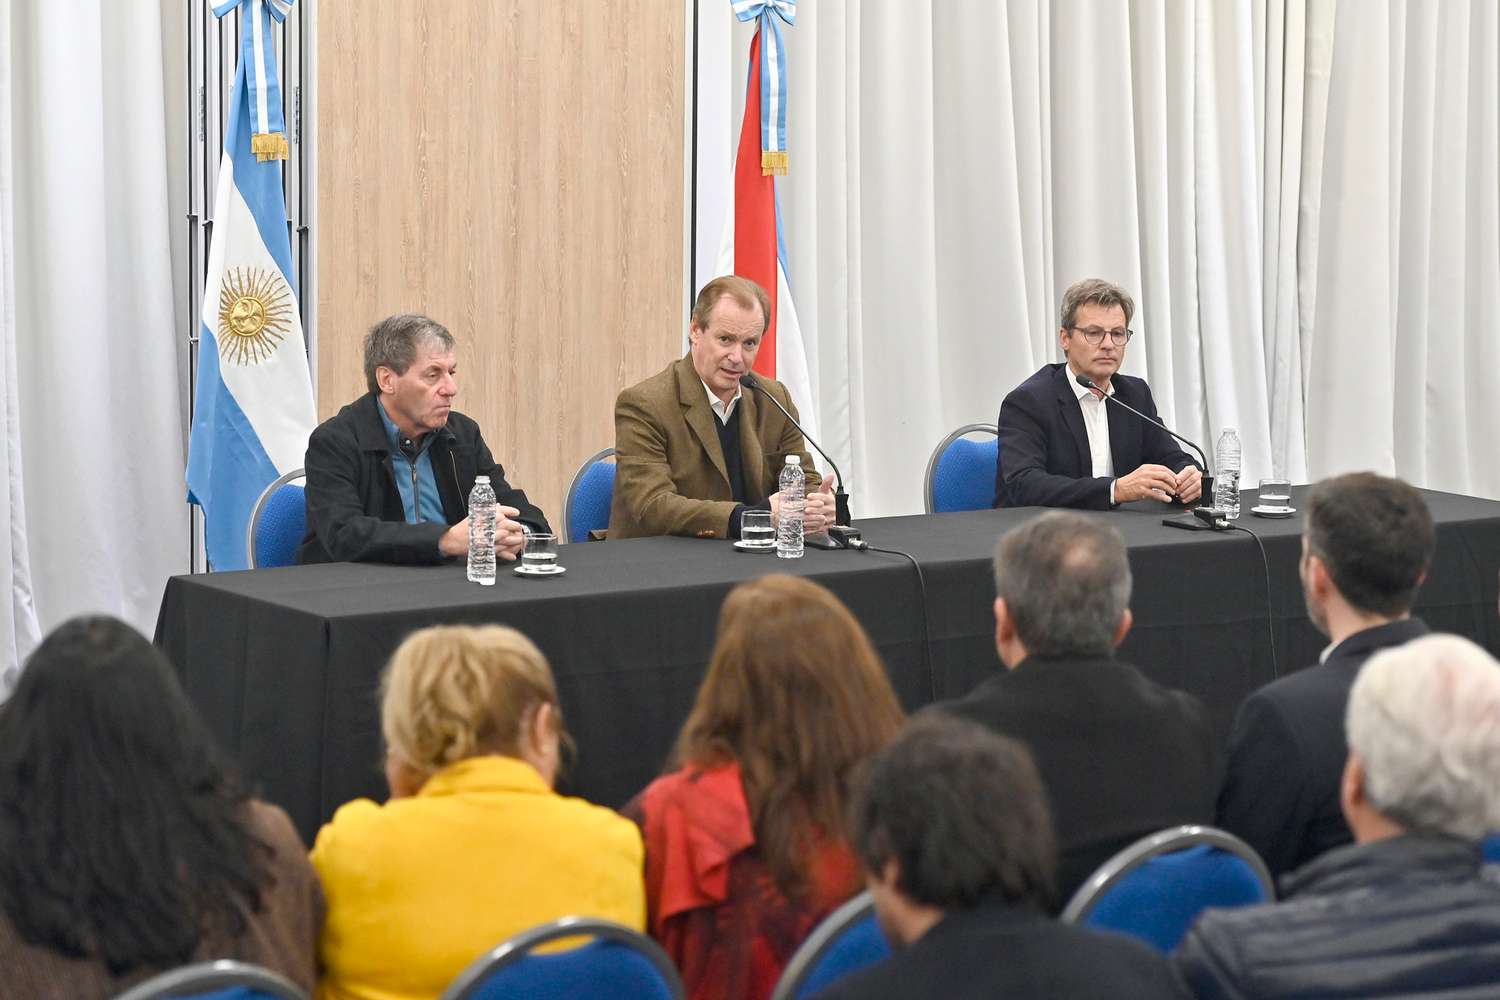 Para escuelas de Gualeguay y otras ciudades el gobernador firmó contratos para obras